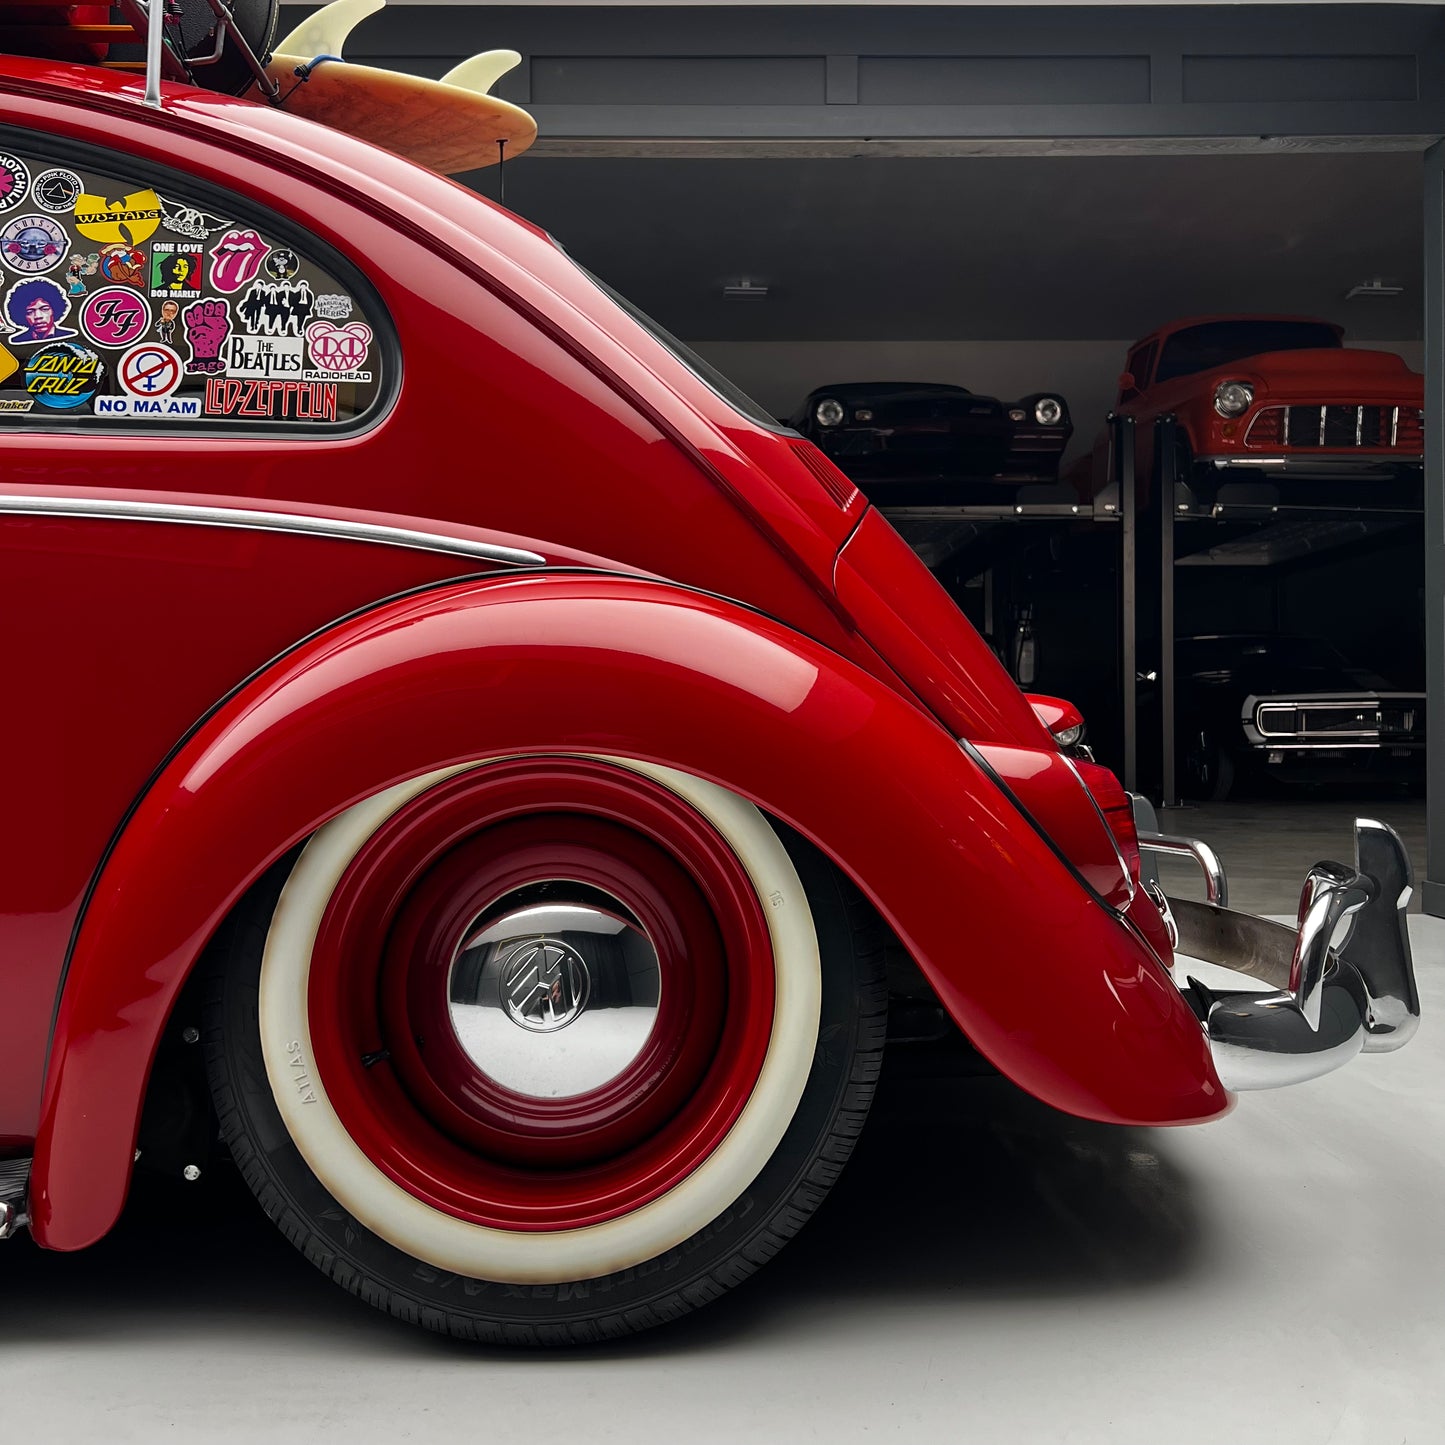 1964 Volkswagen Beetle